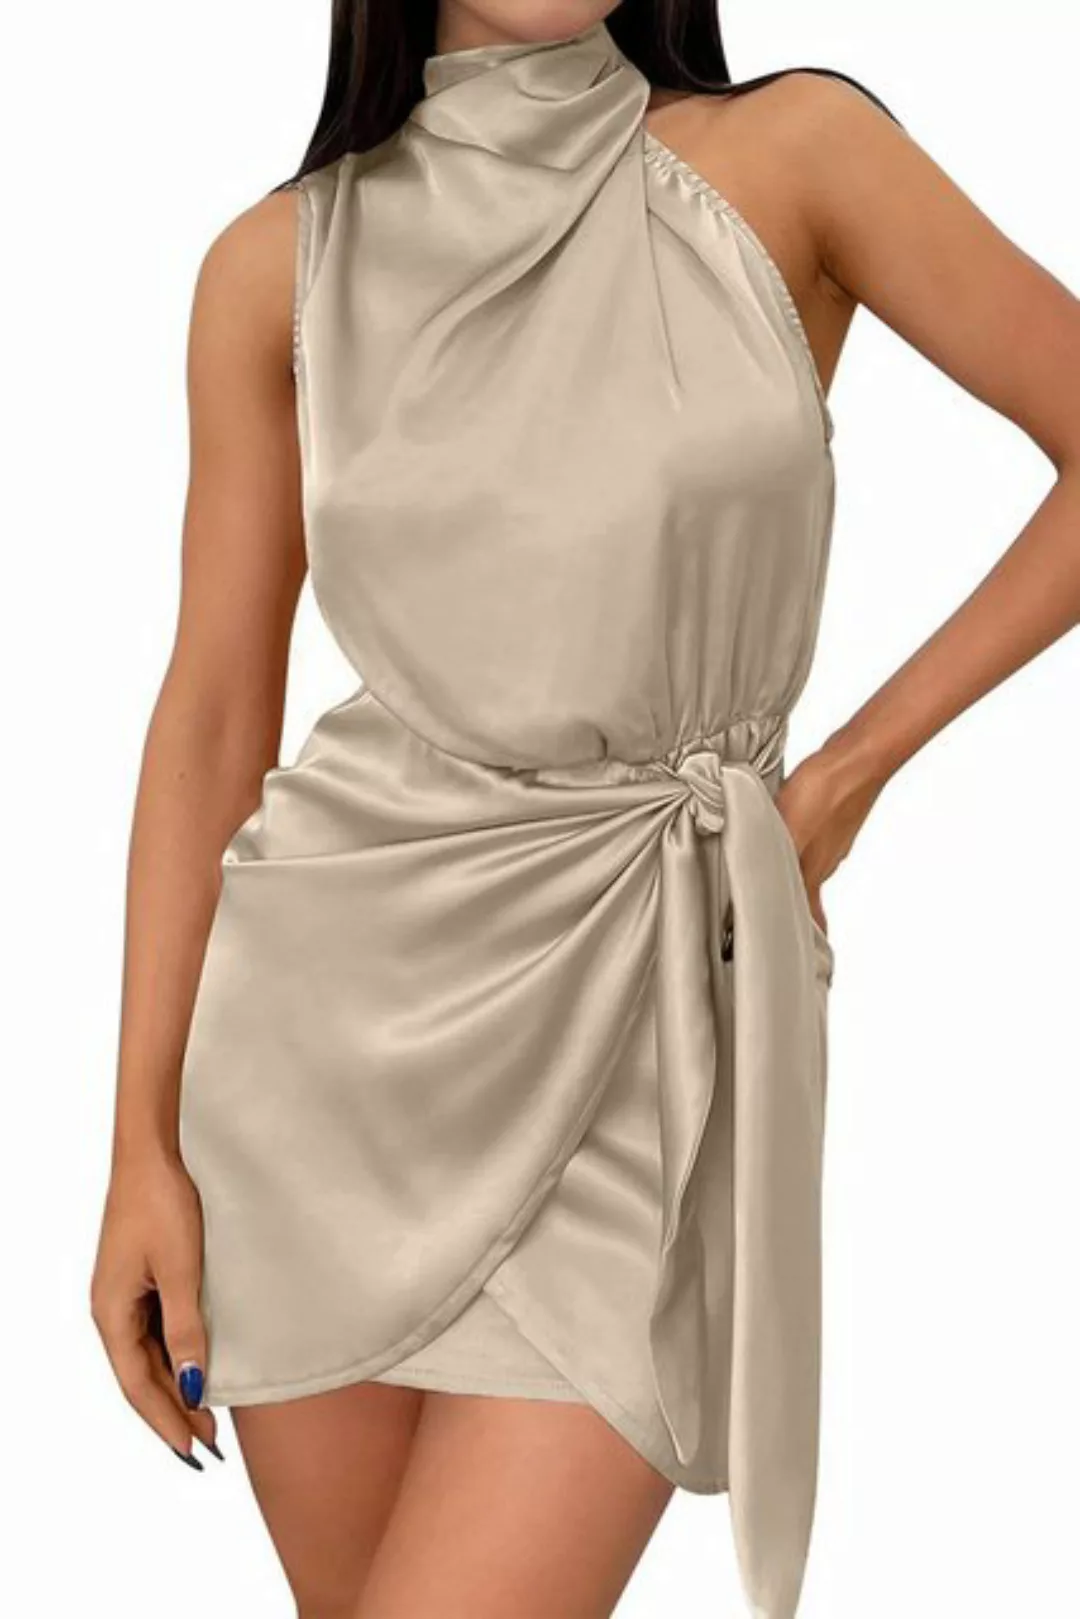 Orient Phoenix Abendkleid Casual kleider damen,Sommerkleid,minikleid eng Sa günstig online kaufen